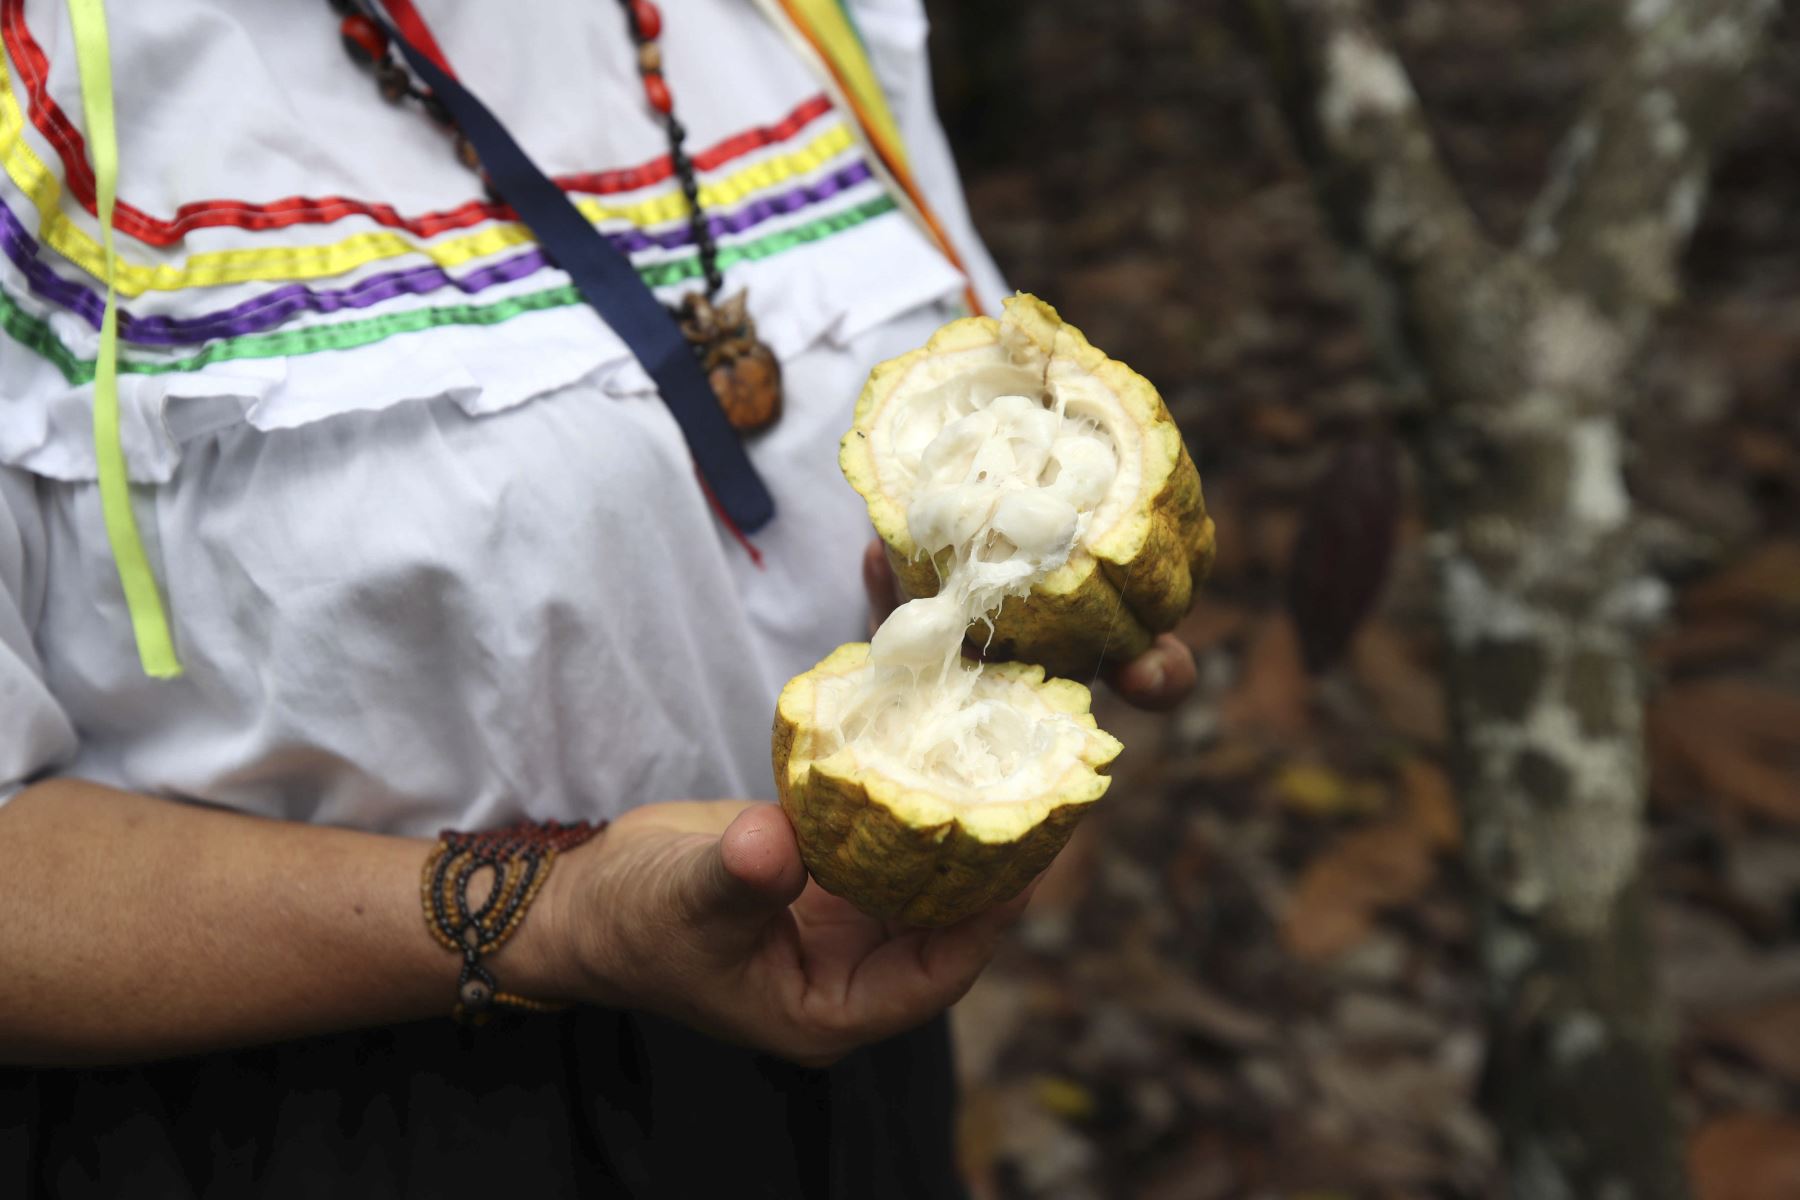 Una miembro de la asociación Chocowarmis sostiene un fruto de cacao en un campo de la comunidad indígena Copal Sacha, en la Amazonía (Perú). Cultivar cacao y producir chocolates ecológicos ha empoderado a las mujeres de la asociación peruana Chocowarmis, favorecidas por el alto precio que este fruto ha alcanzado en los últimos meses.
Foto: EFE